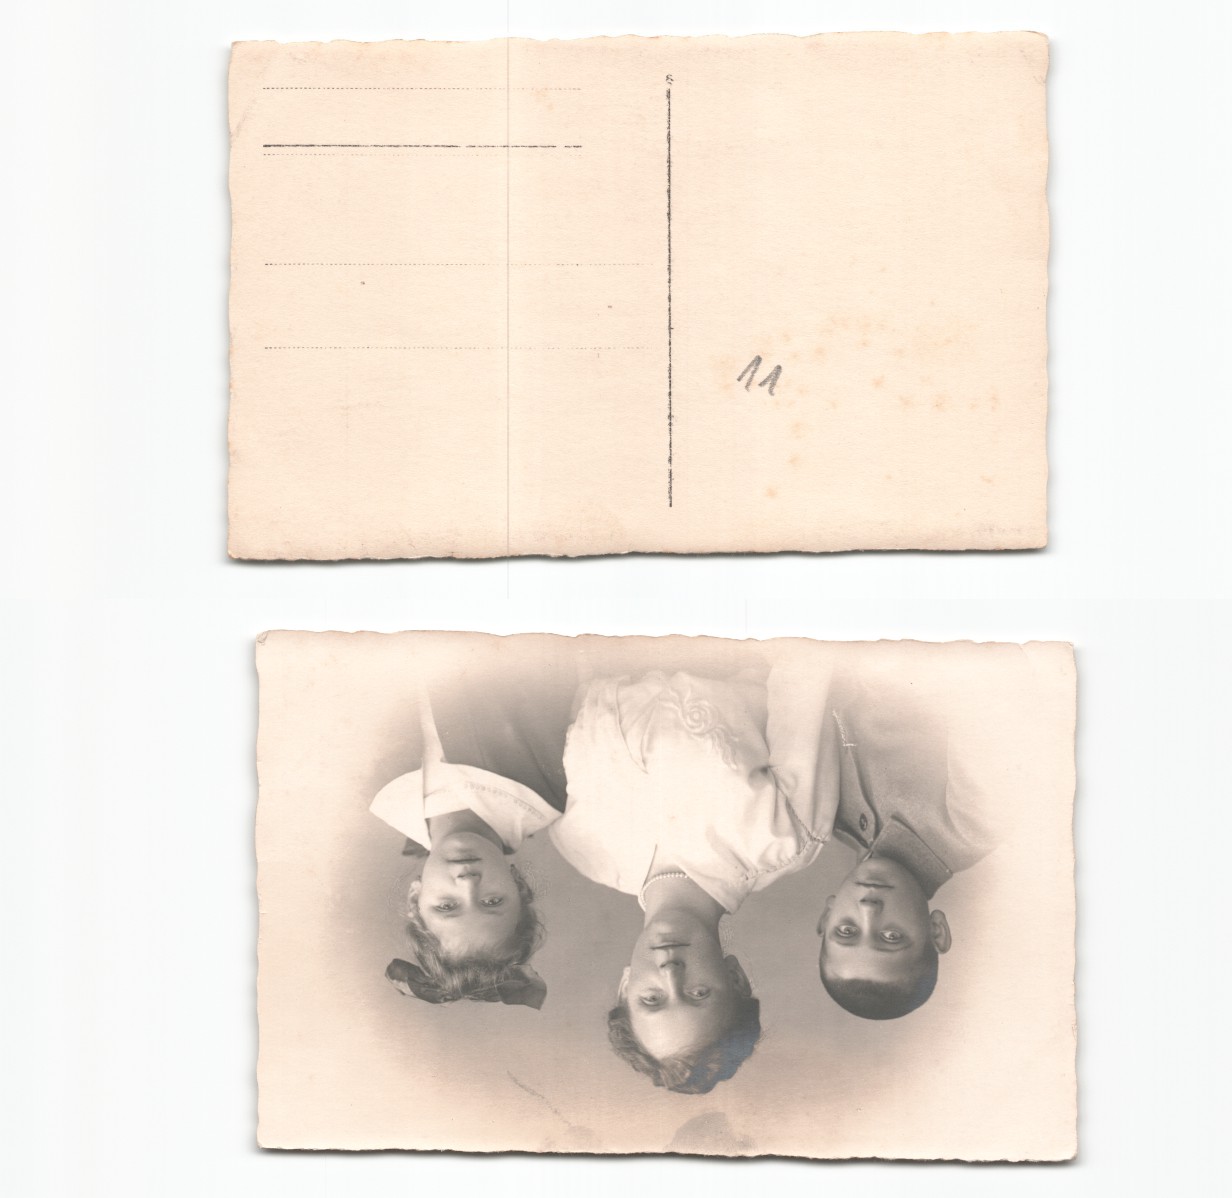 (a6265211)   Fotoansichtskarte Osten Bug Düna etc, 1. Weltkrieg, - Bild 1 von 1